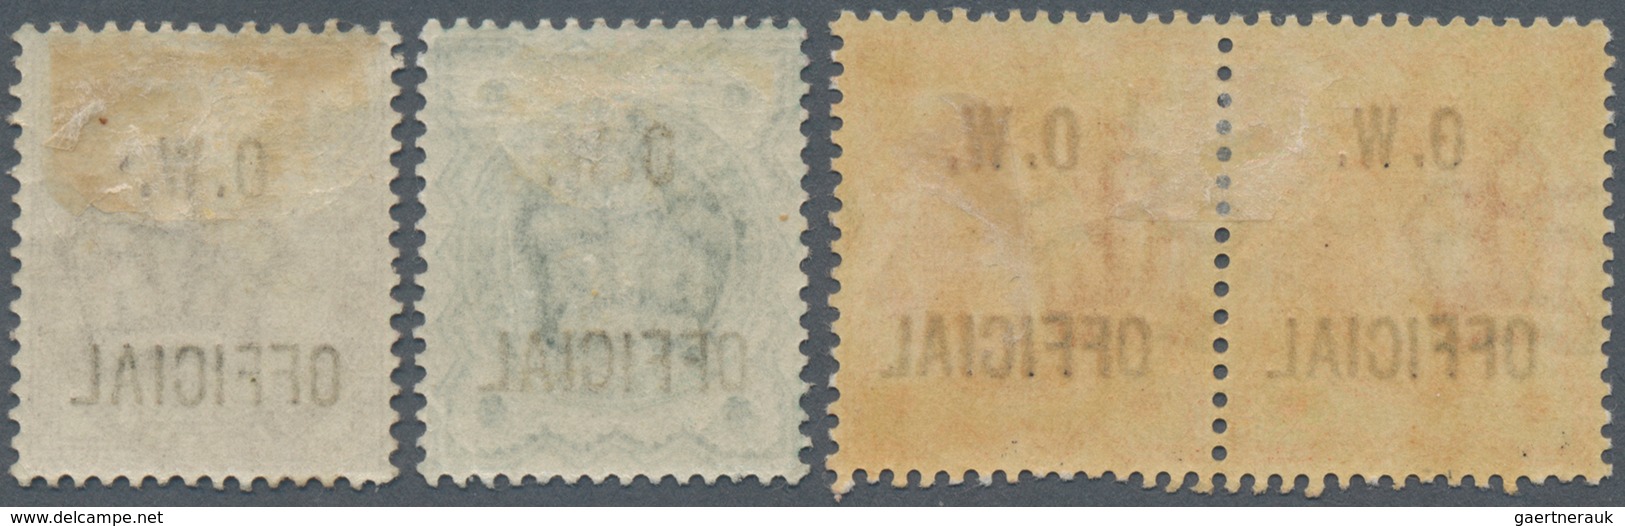 Großbritannien - Dienstmarken: 1896/1902, Office Of Works, QV ½d. Orange Horizontal Pair, ½d. Blue-g - Dienstzegels